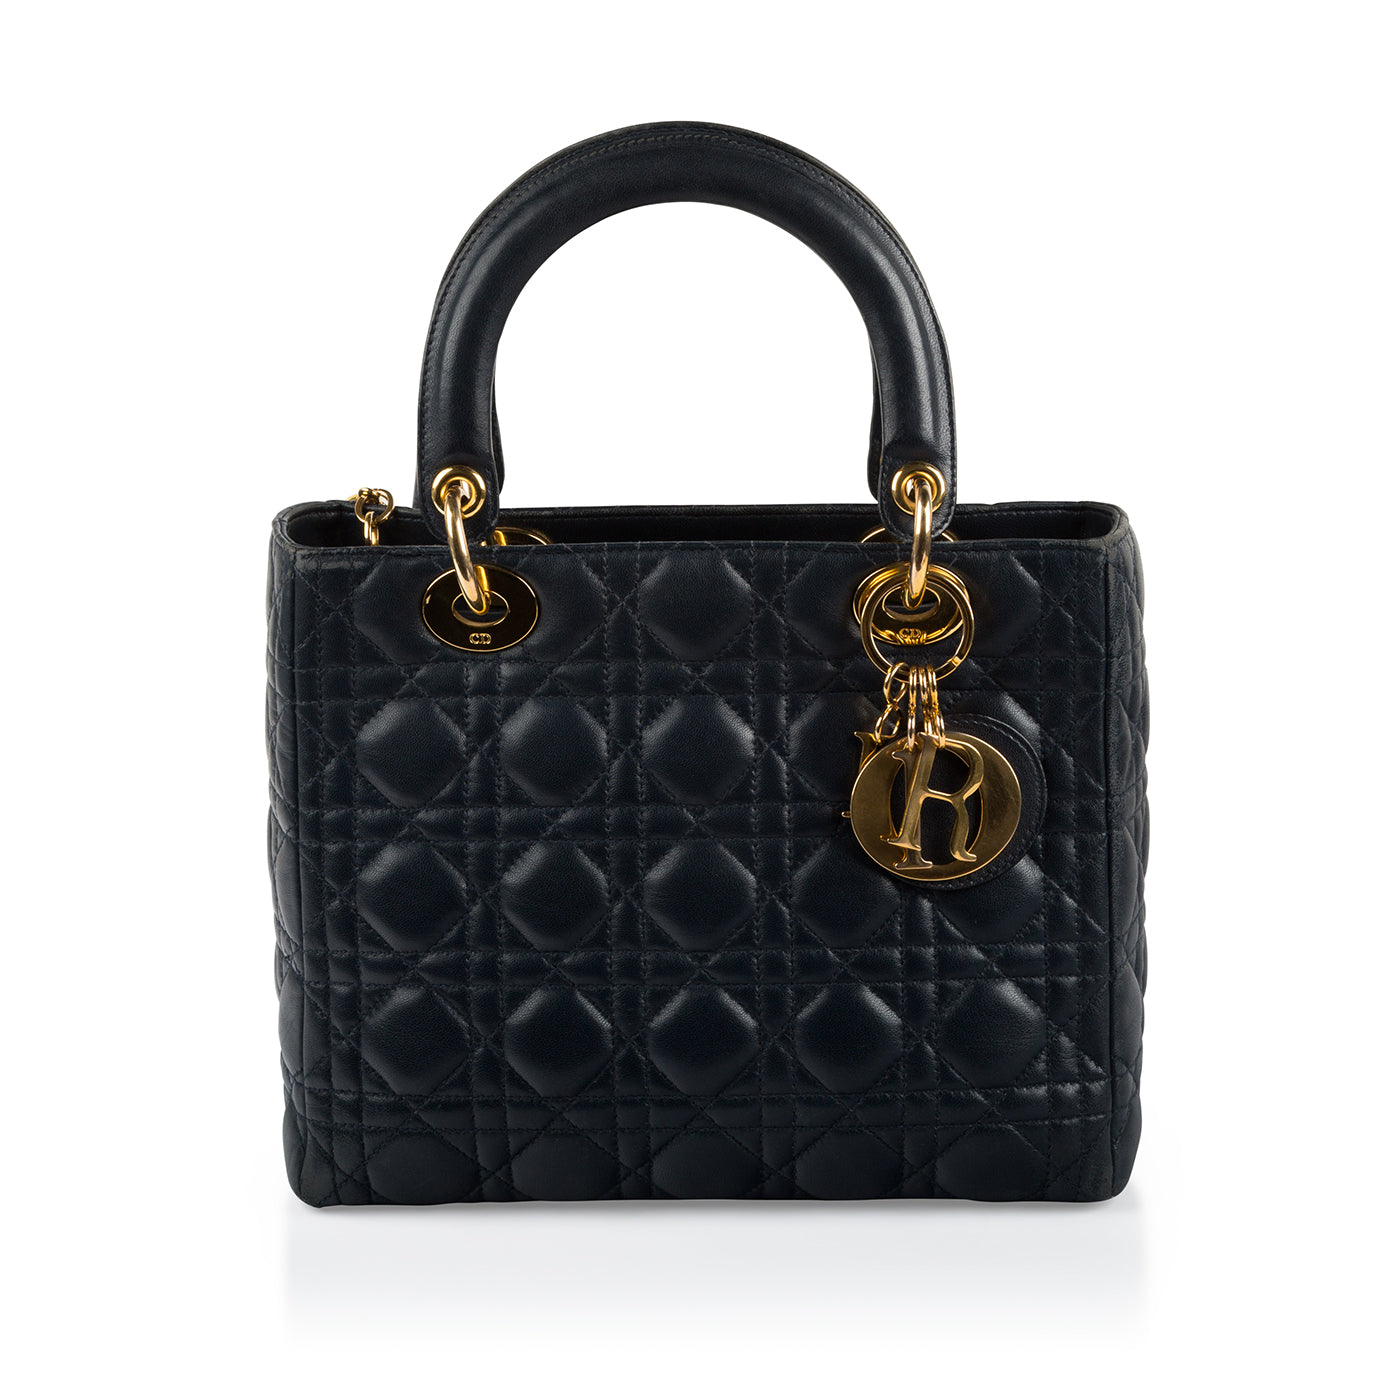 Lady Dior Handbag Princess Diana's | semashow.com